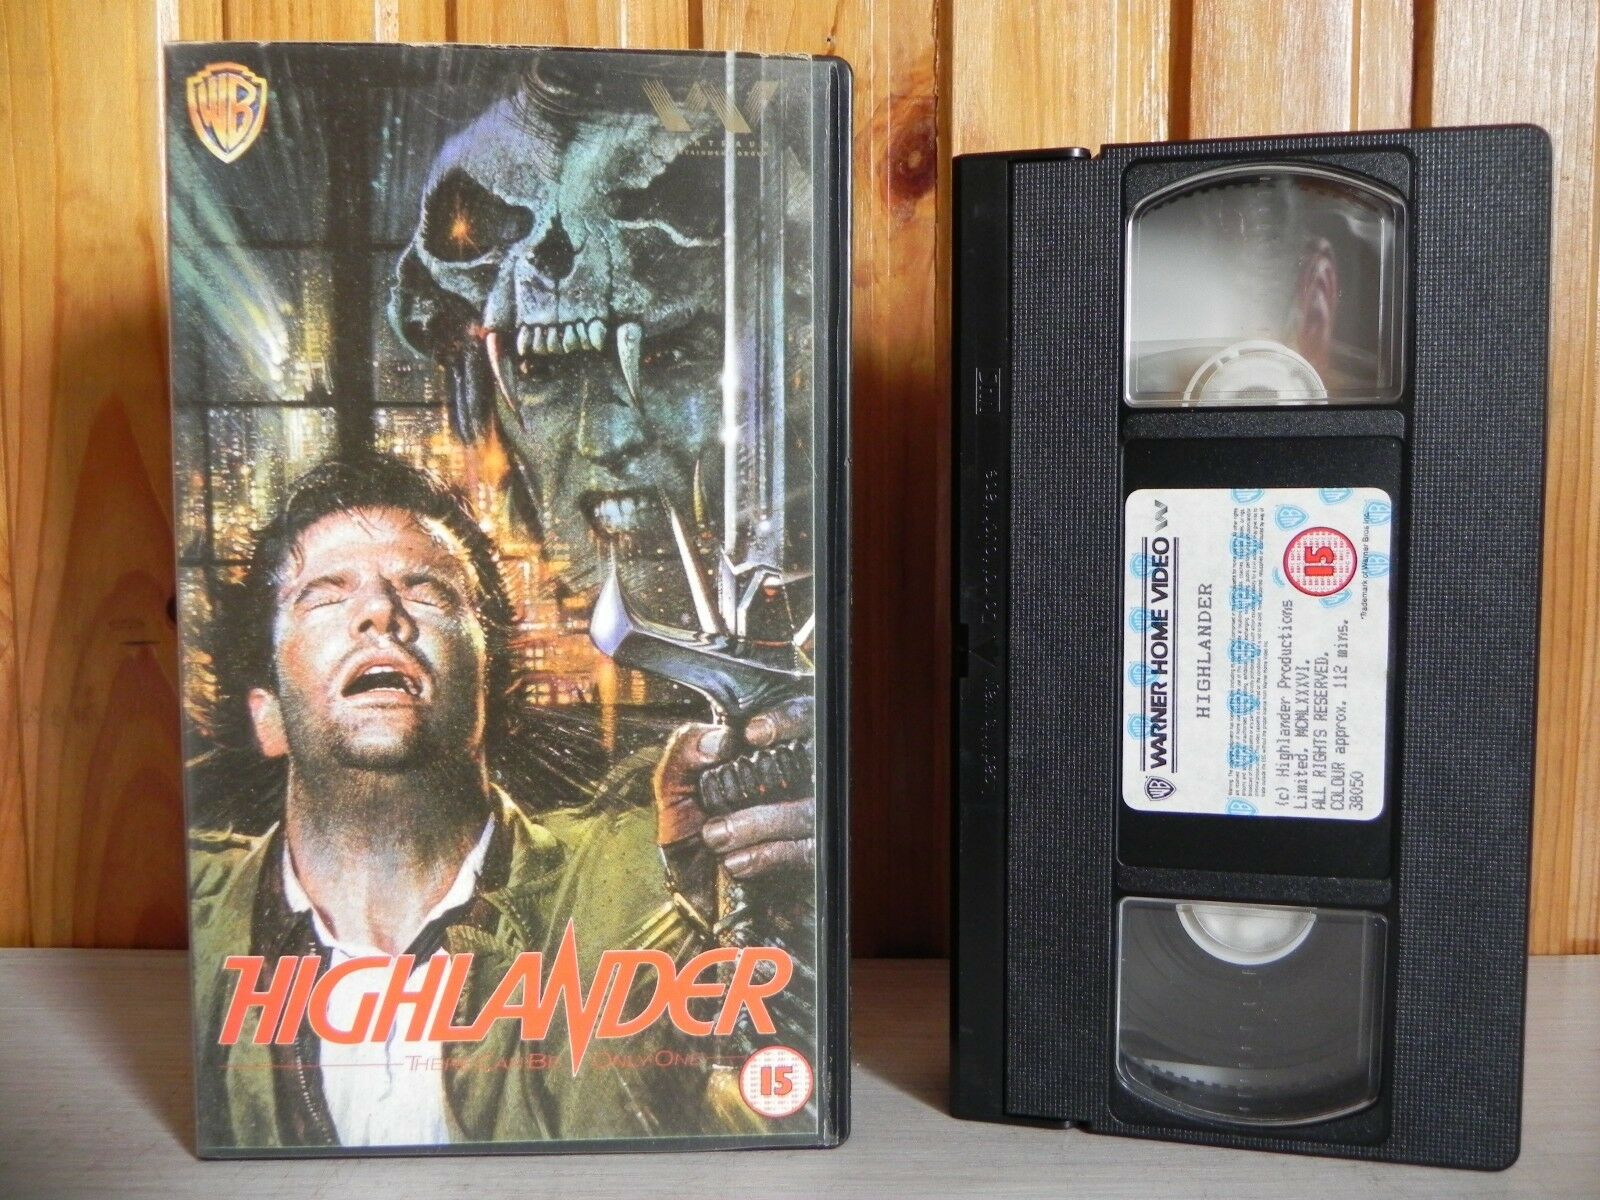 Highlander 1 - The Original - Iconic Sleeve Art - 1st Warner Home Release - VHS-